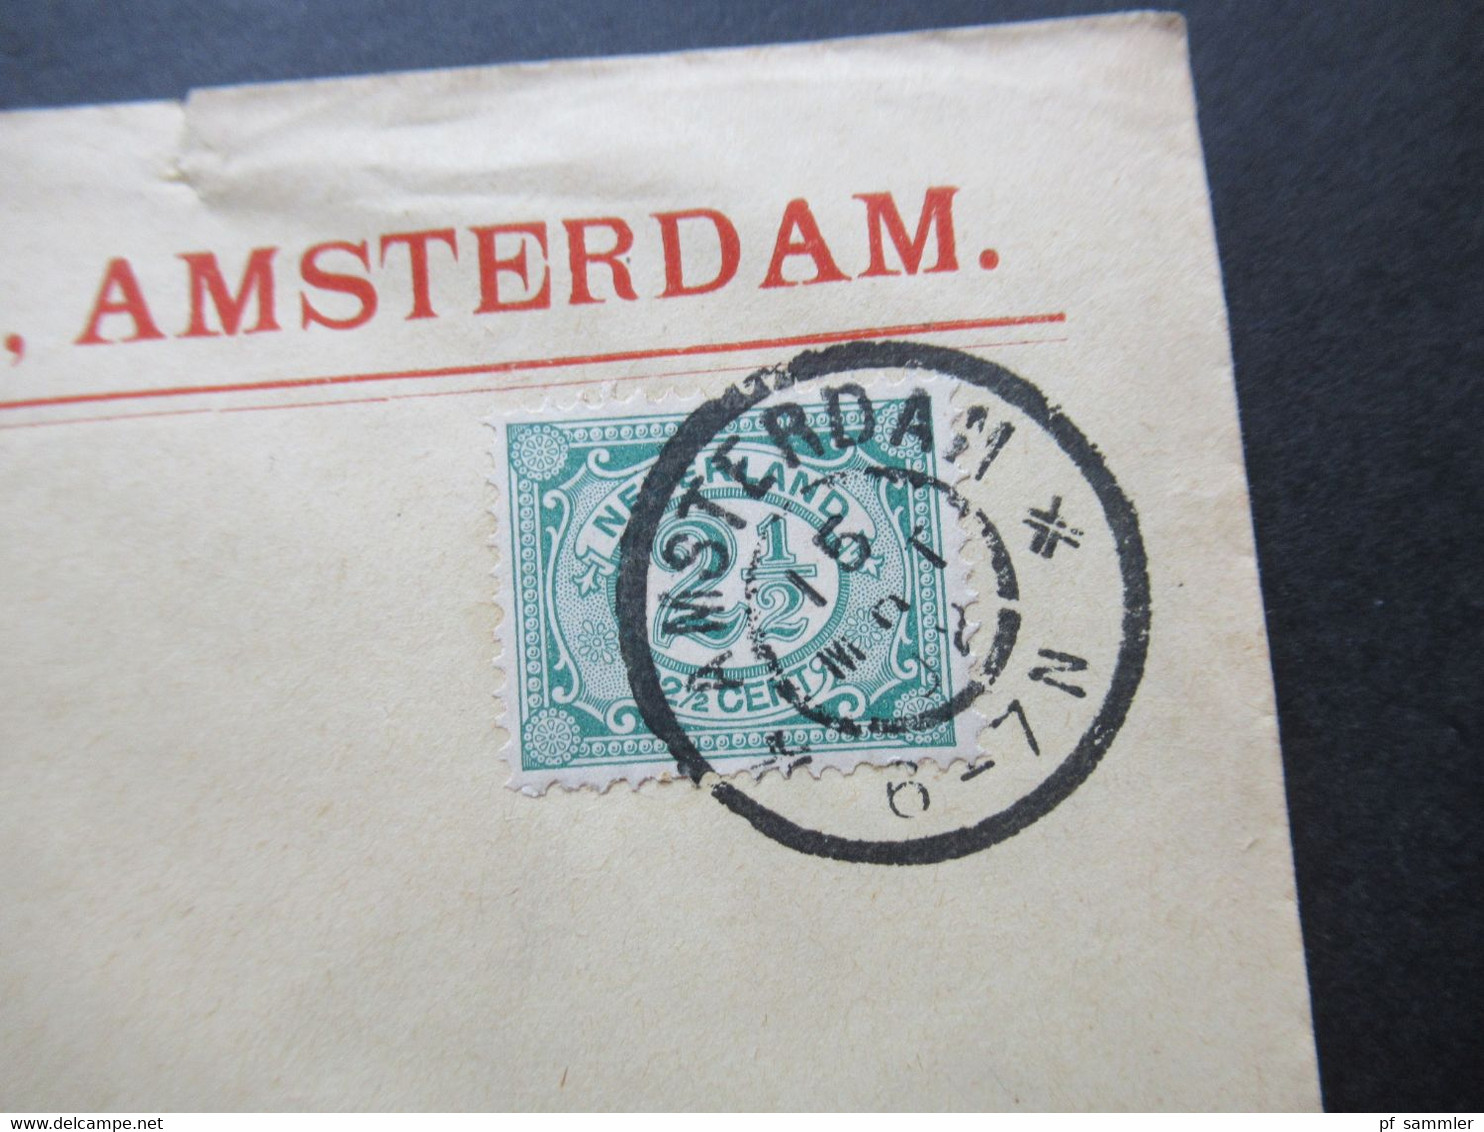 Niederlande 3 Belege / bedrucke Umschläge / Firmenbelege 1x 1902 und 2x 1920er Jahre! Rotterdam, Amsterdam, Vlaardingen